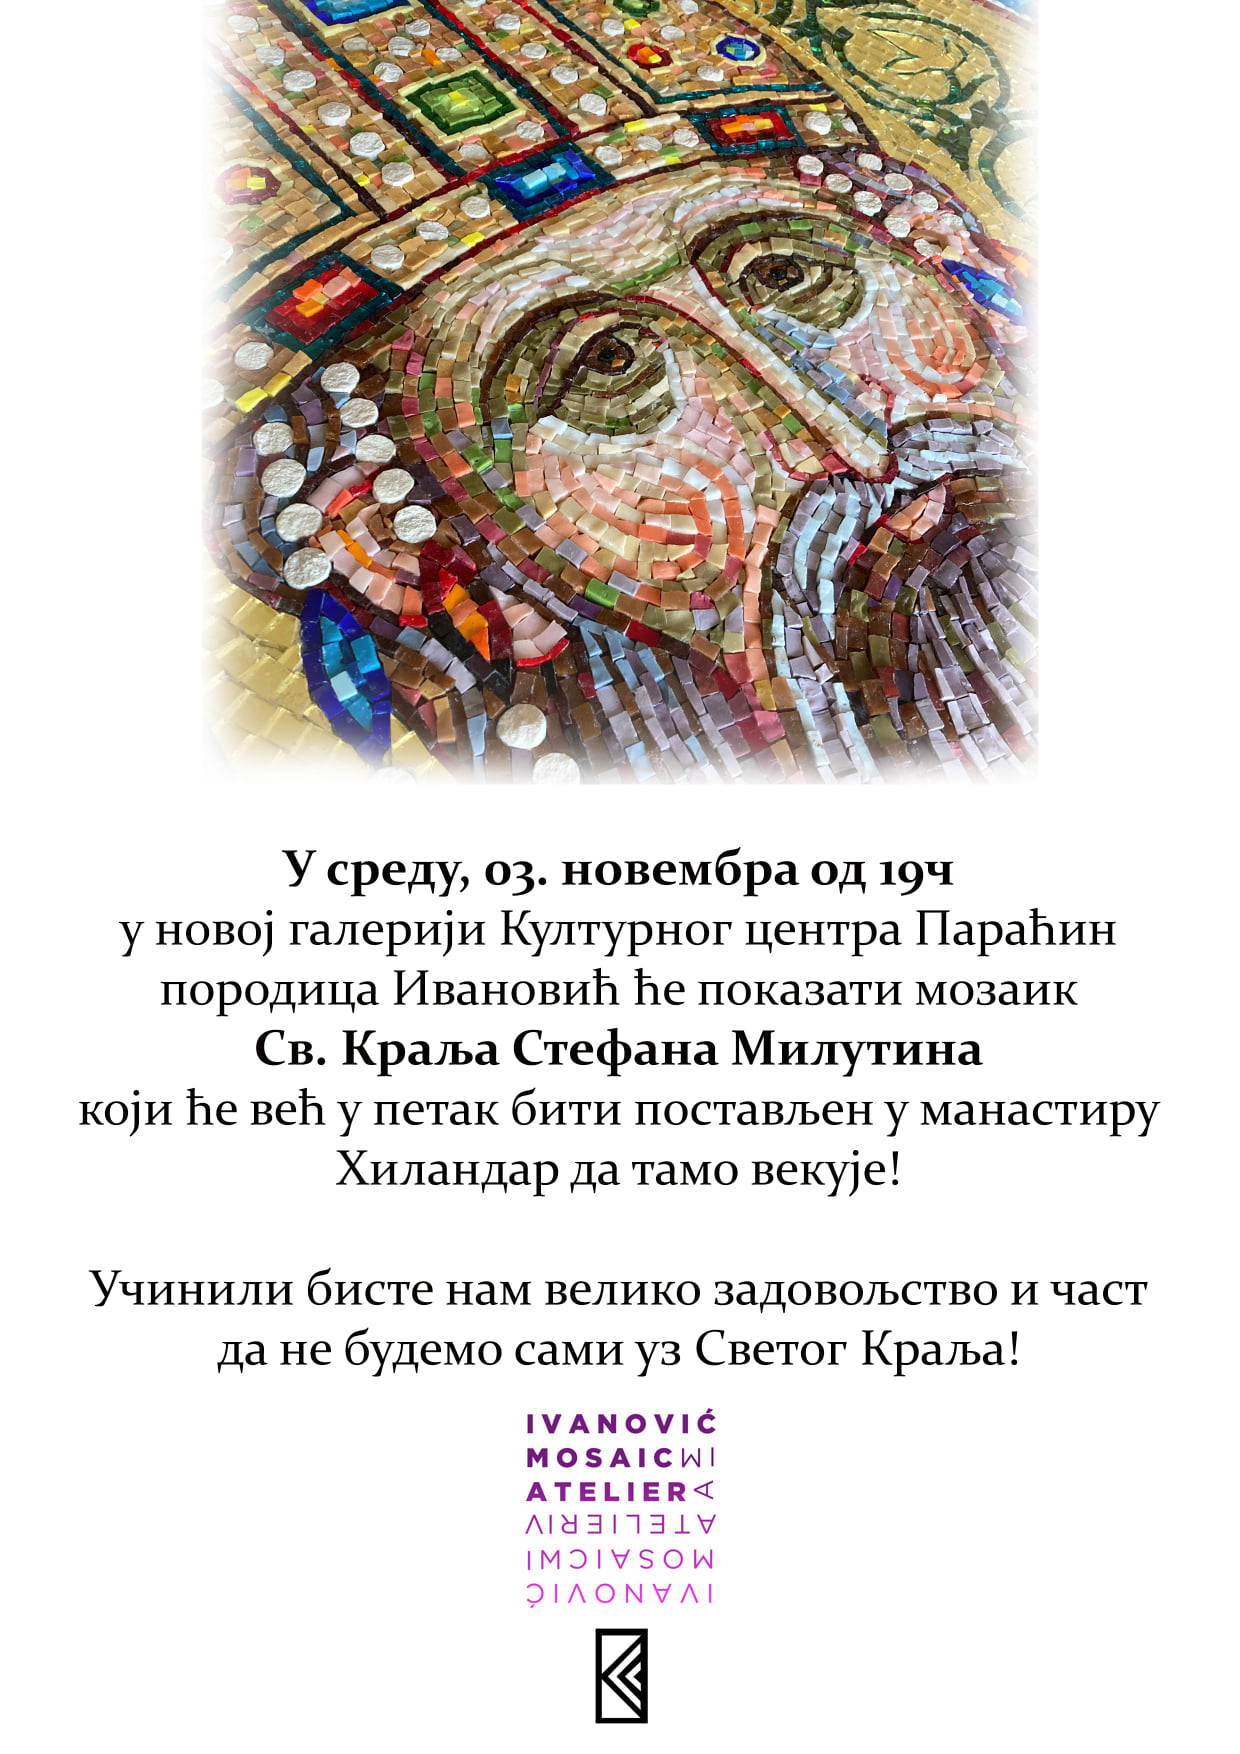 Mozaik Sv. kralja Stefana Milutina sutra pred Paraćincima u novoj galeriji Kulturnog centra